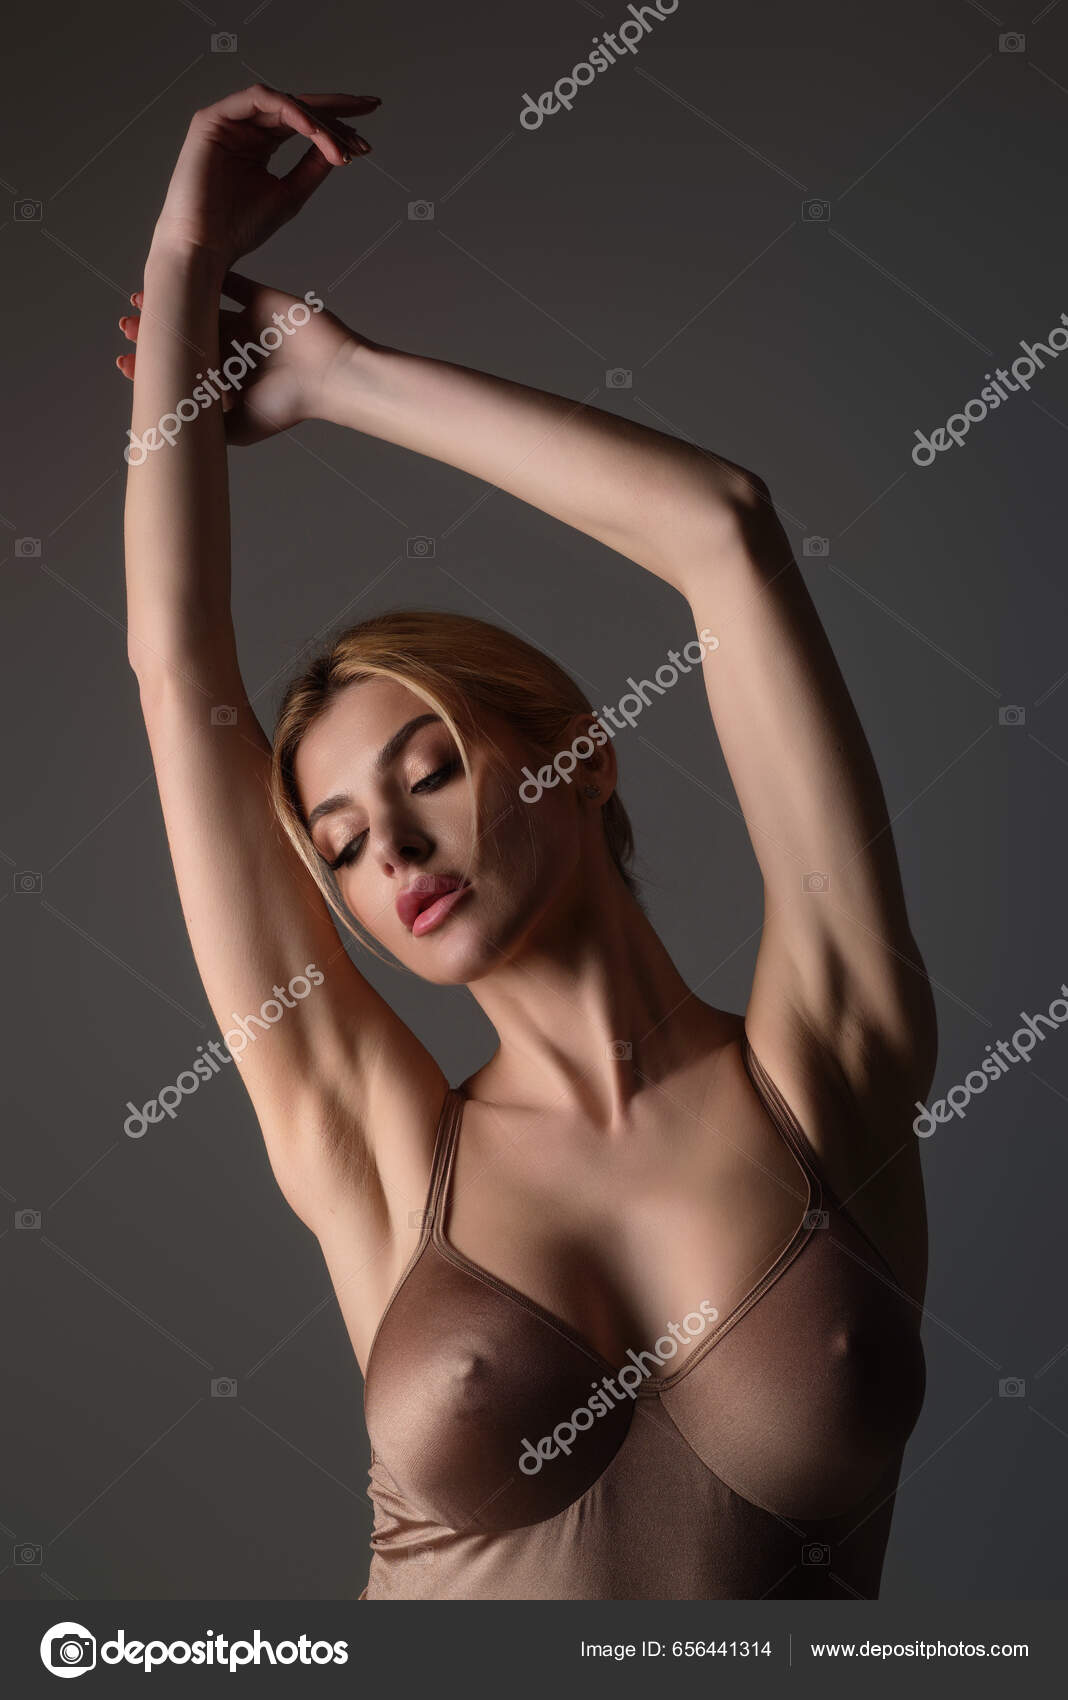 Black Bra Natural Boobs Tits Bra Model Sensual Elegant Young